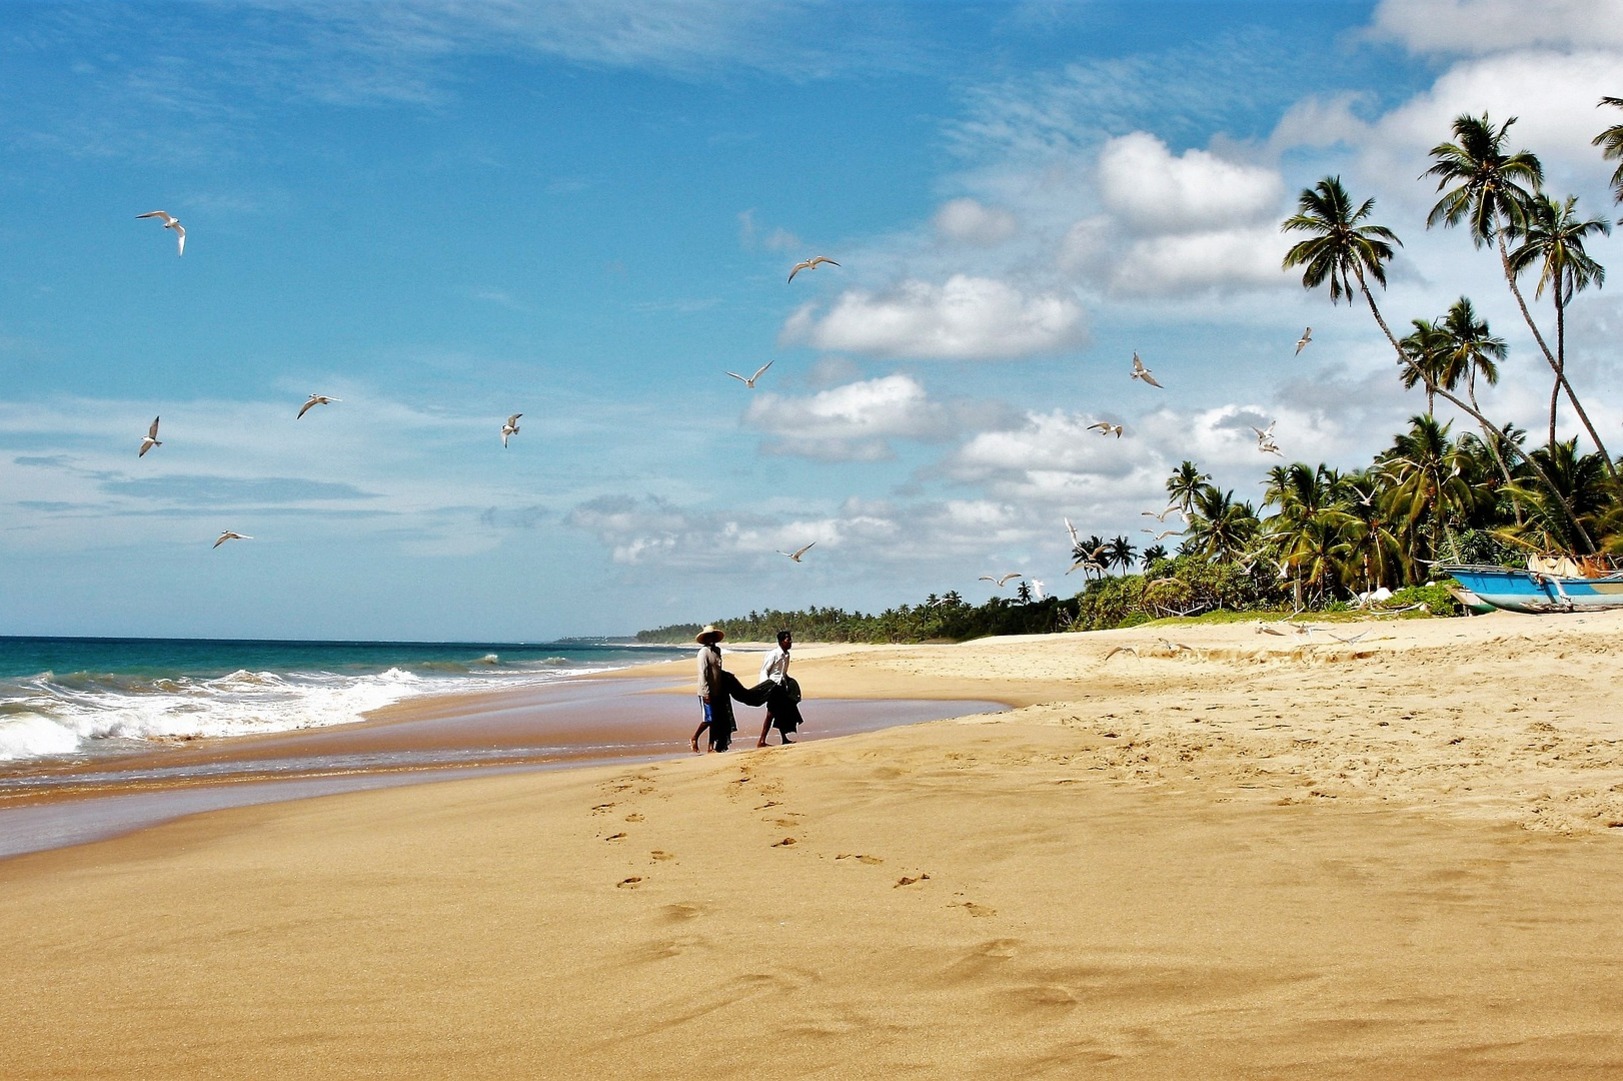 Sri Lanka beach holiday